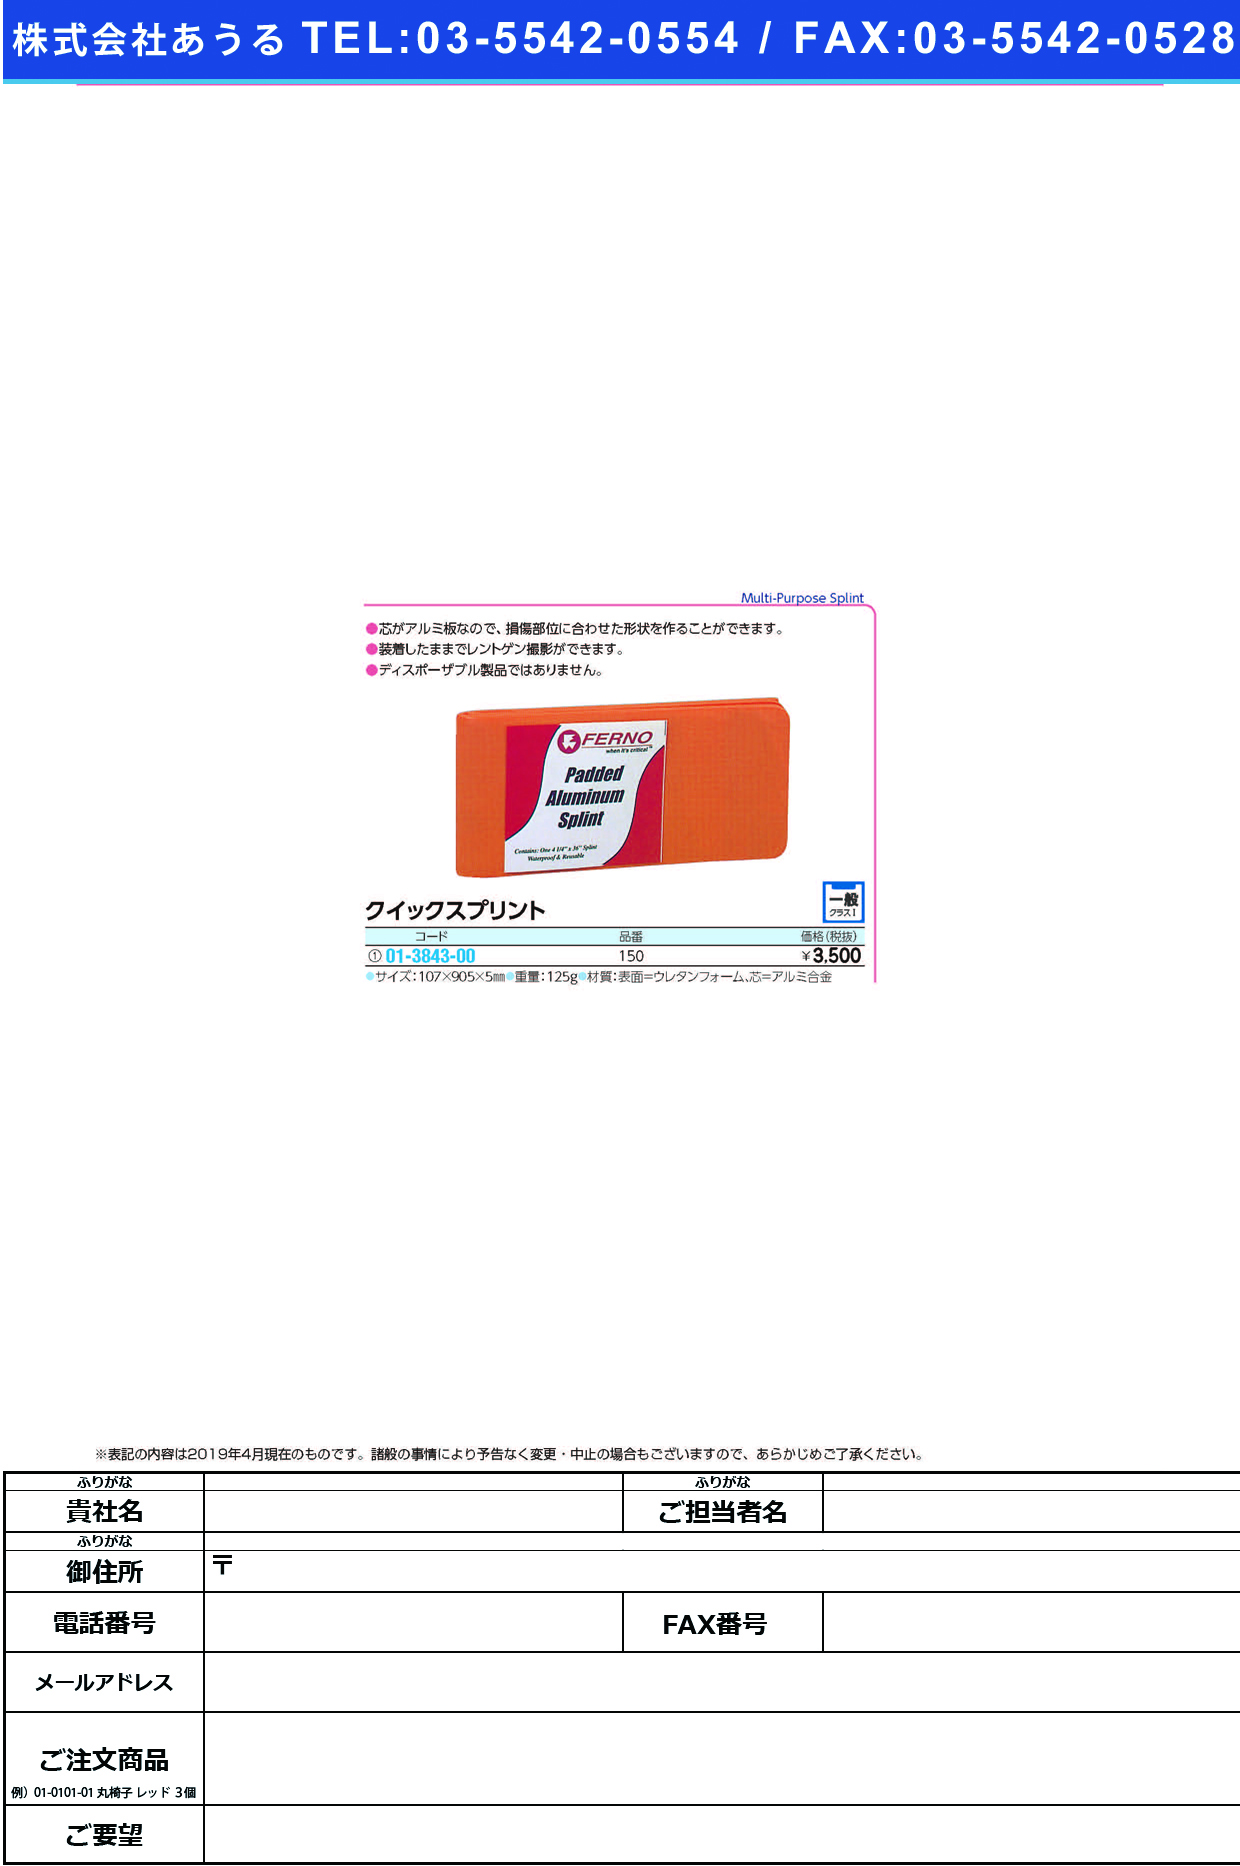 (01-3843-00)クイックスプリント 150 ｸｲｯｸｽﾌﾟﾘﾝﾄ【1枚単位】【2019年カタログ商品】